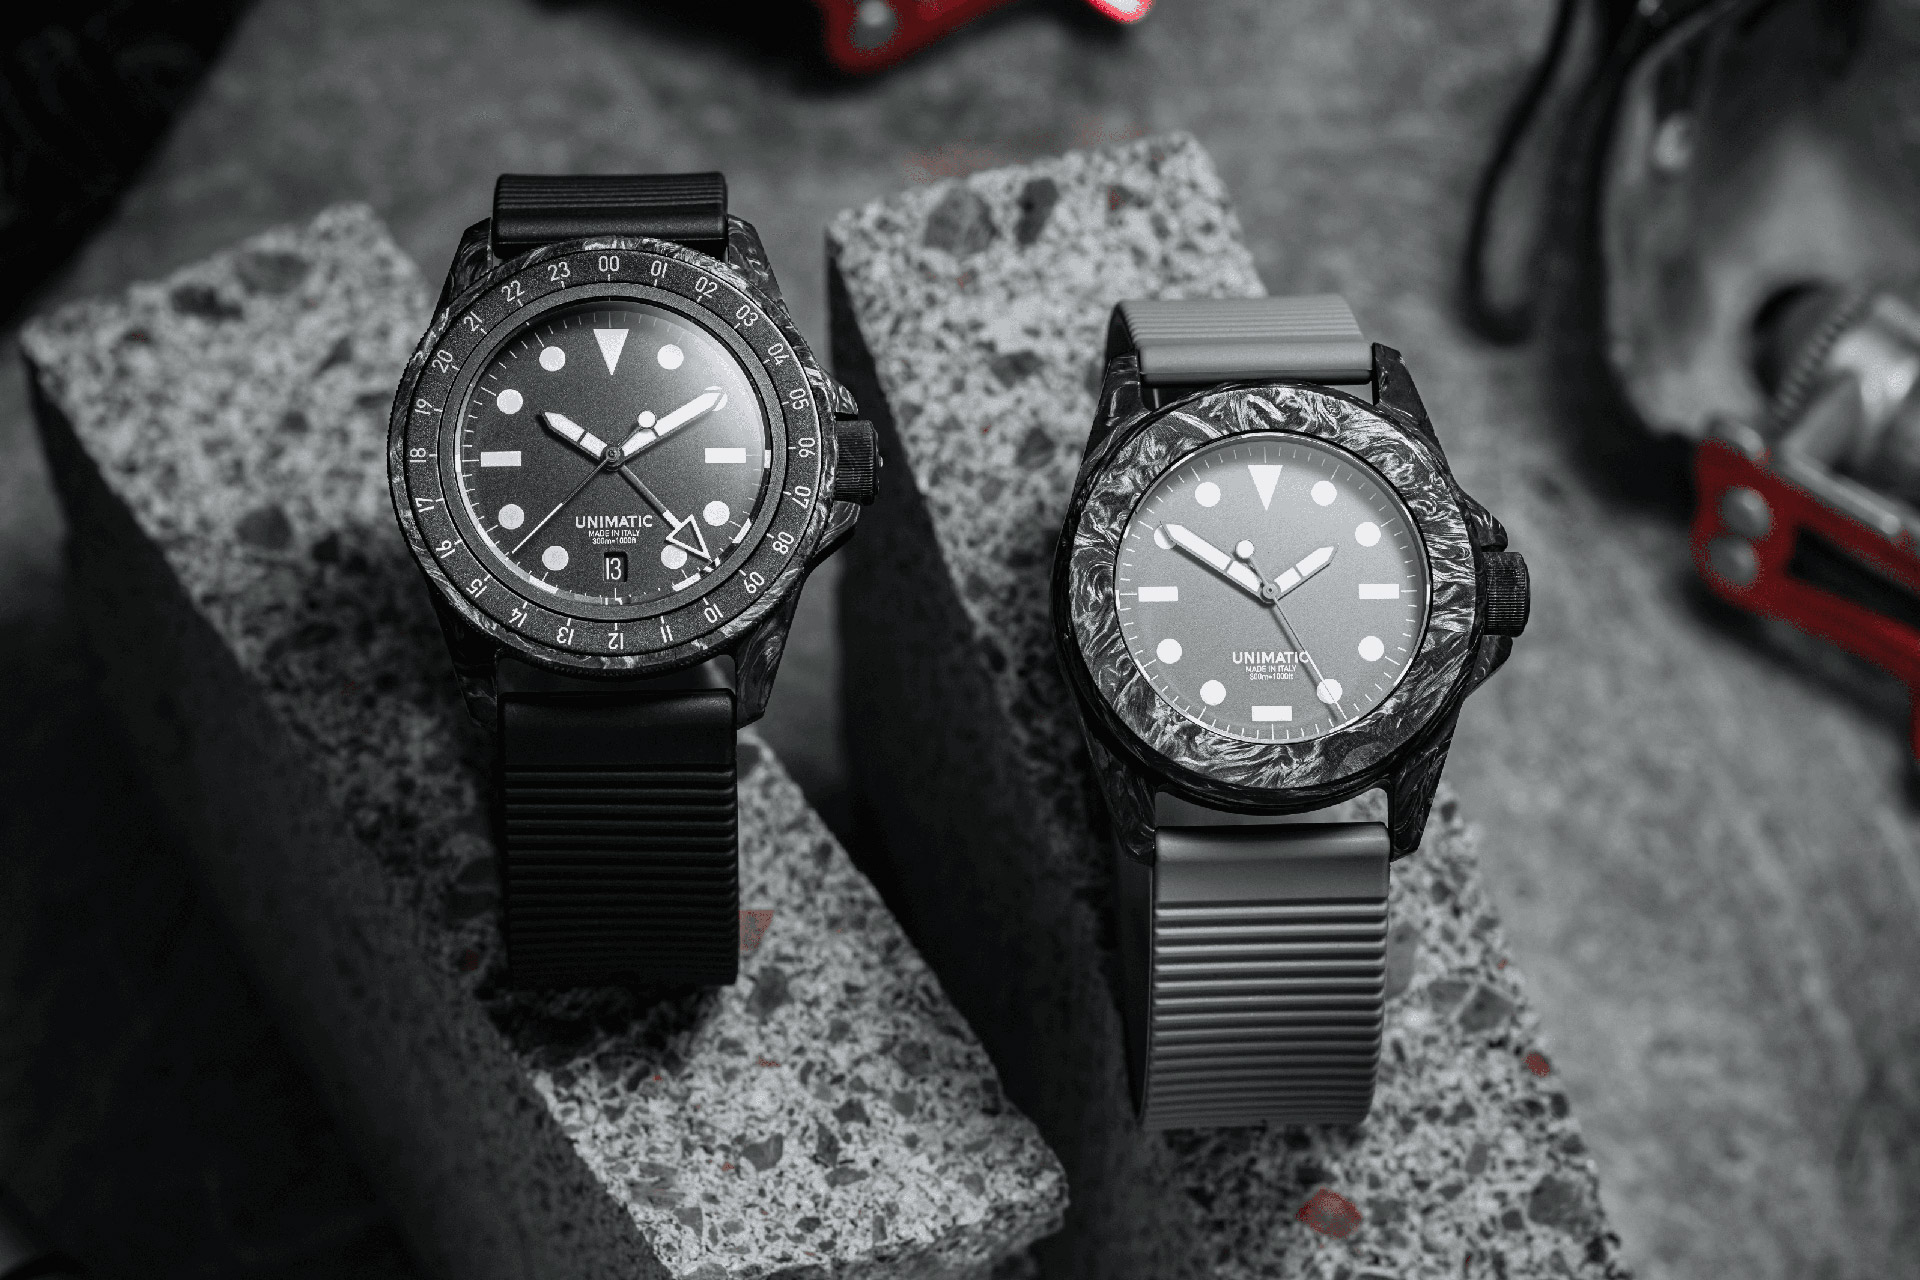 Unimatic x Hodinkee Modello Uno GMT & Modello Quattro Watches, #Unimatic #Hodinkee #Modello #Uno #GMT #Modello #Quattro #Watches